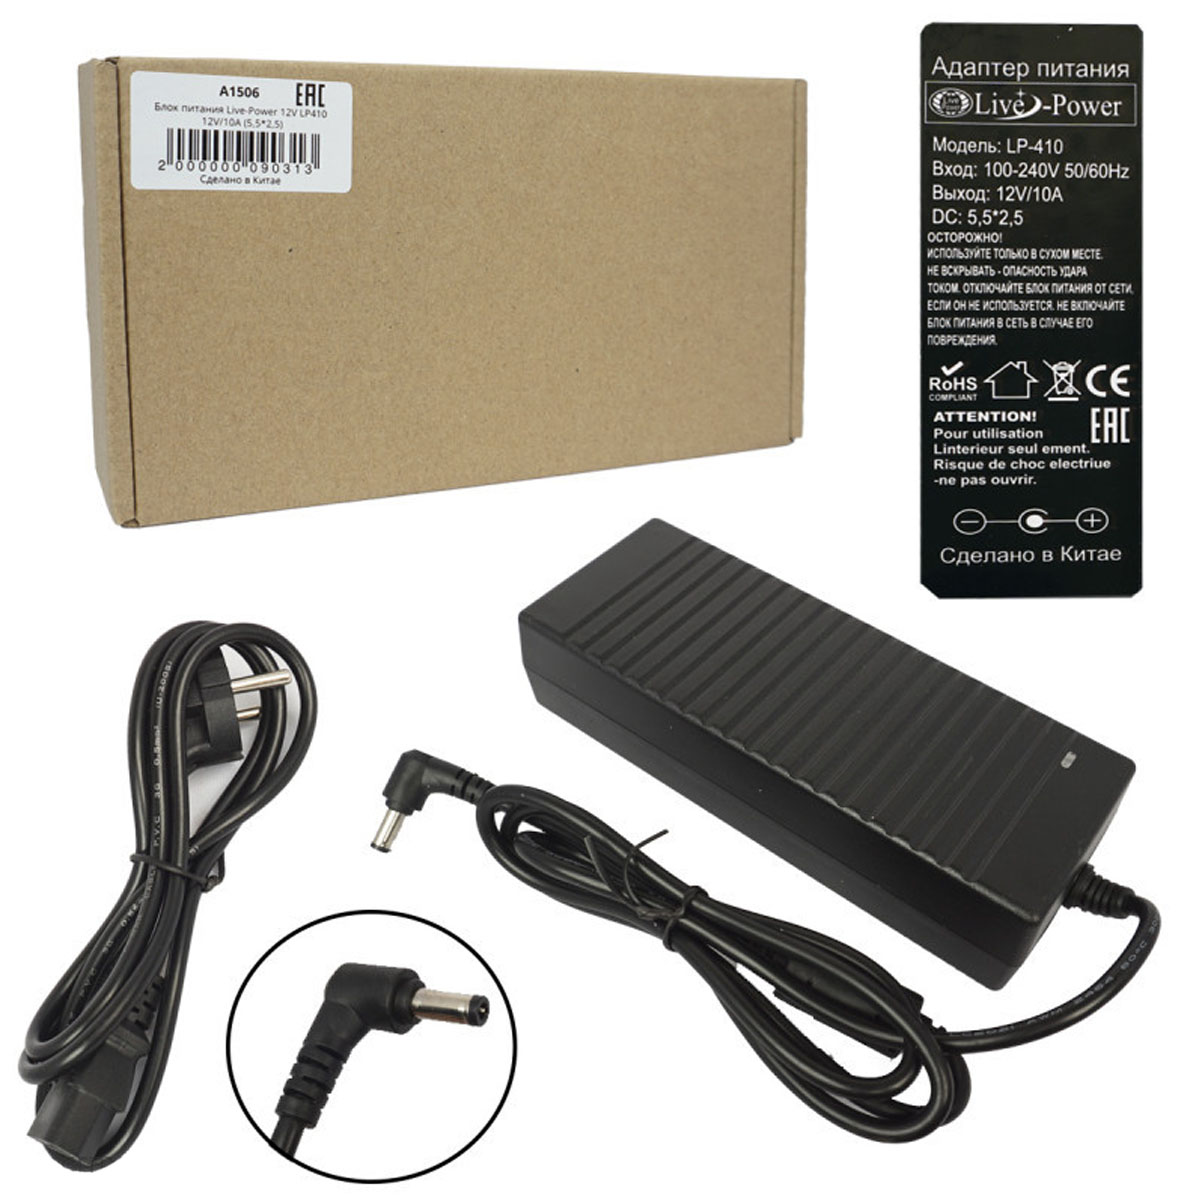 Блок питания Live-Power LP410, 12V-10A, штекер 5.5 на 2.5 мм, цвет черный